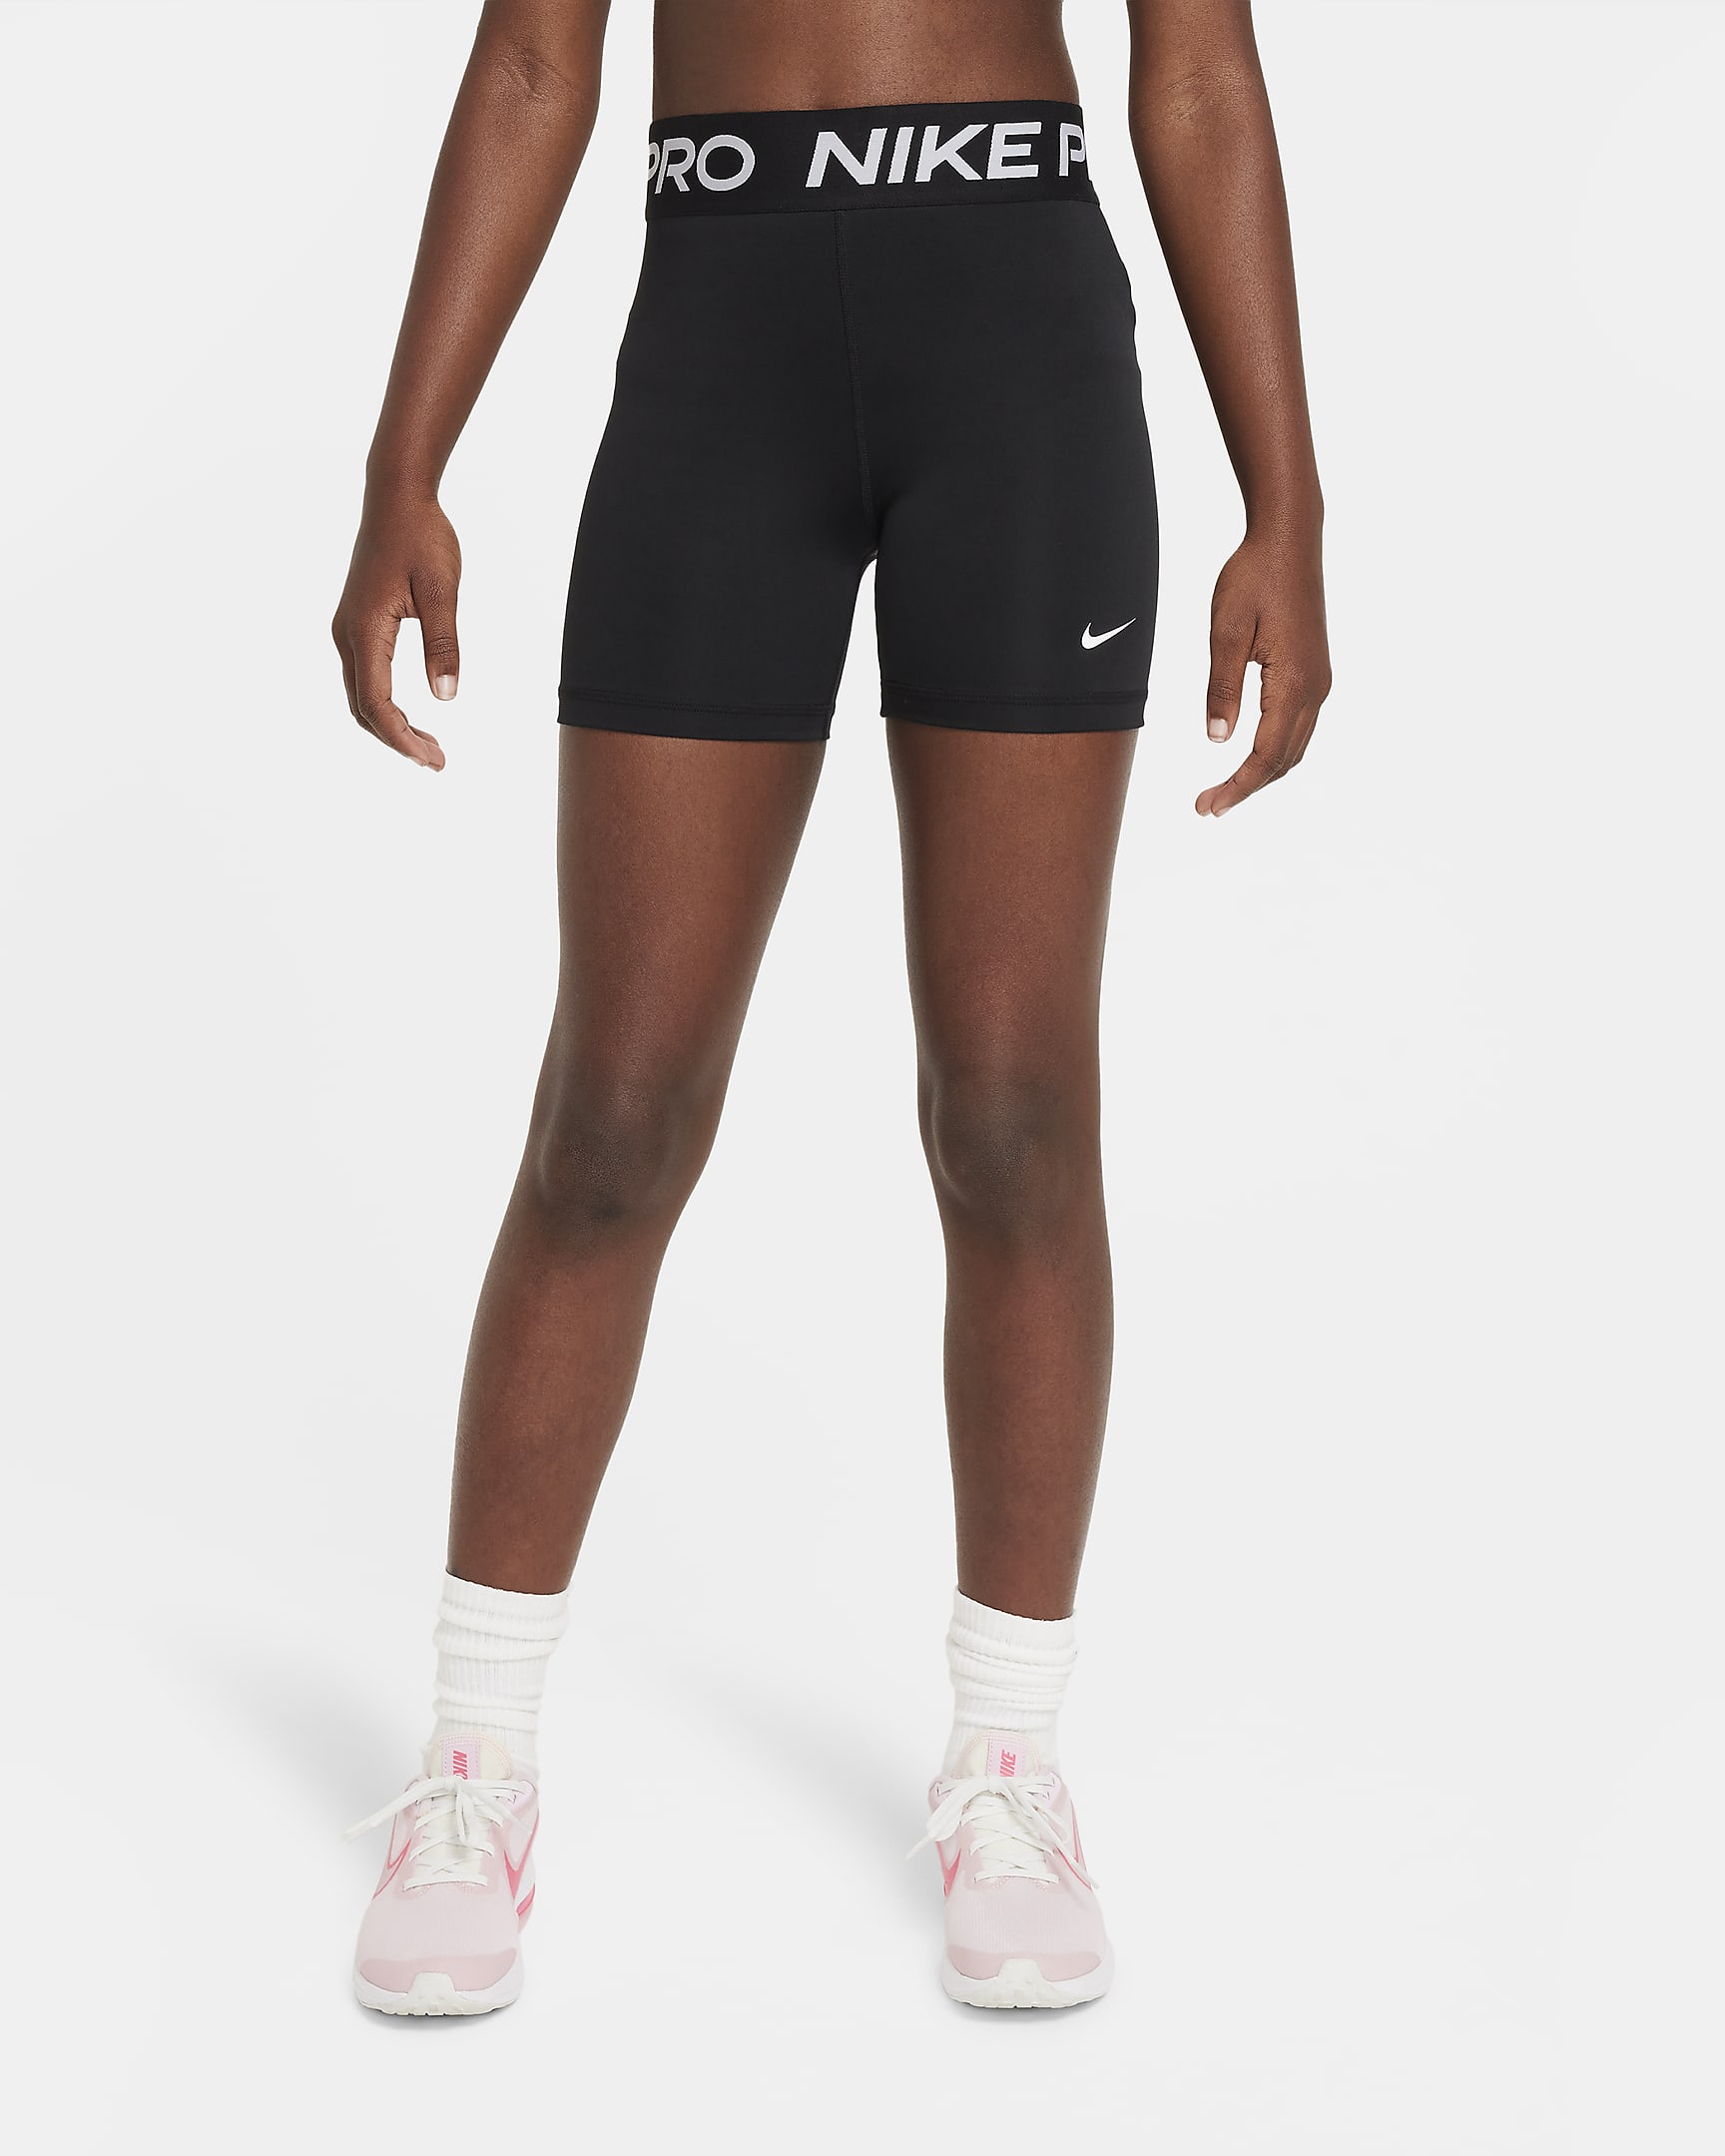 Nike Pro Older Kids' (Girls') Shorts. Nike RO